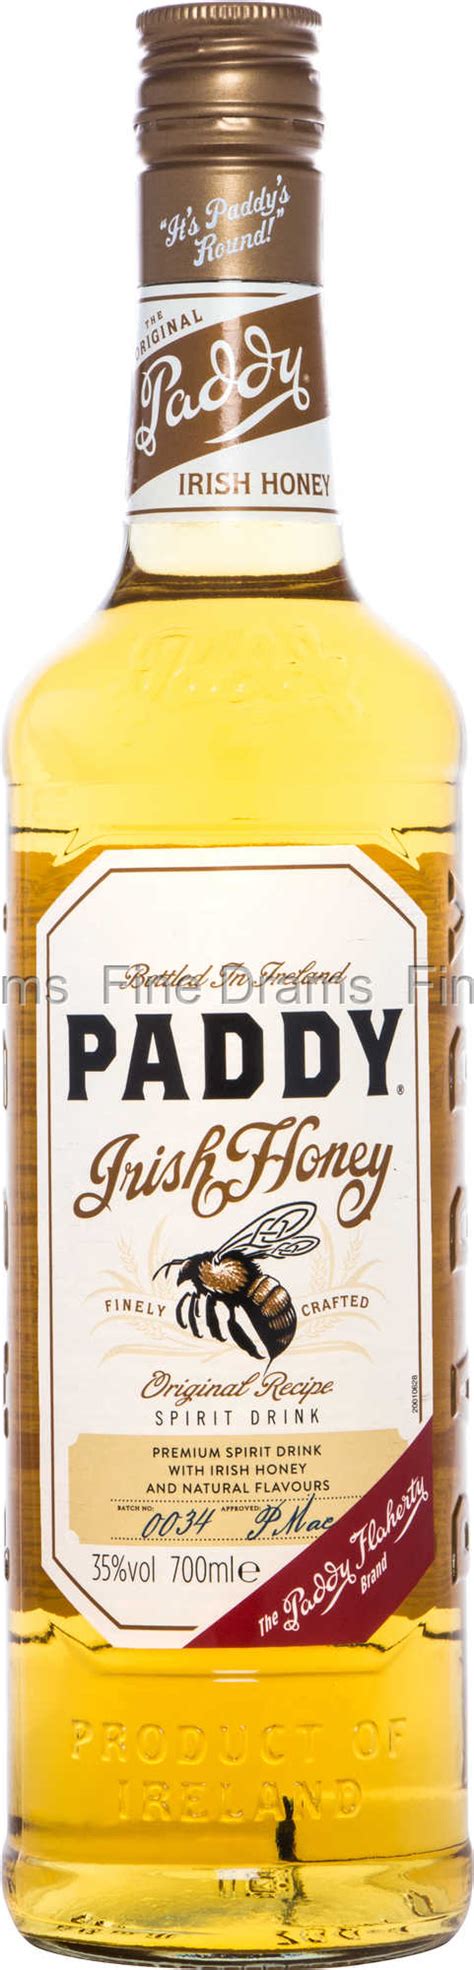 Paddy Irish Honey Whisky